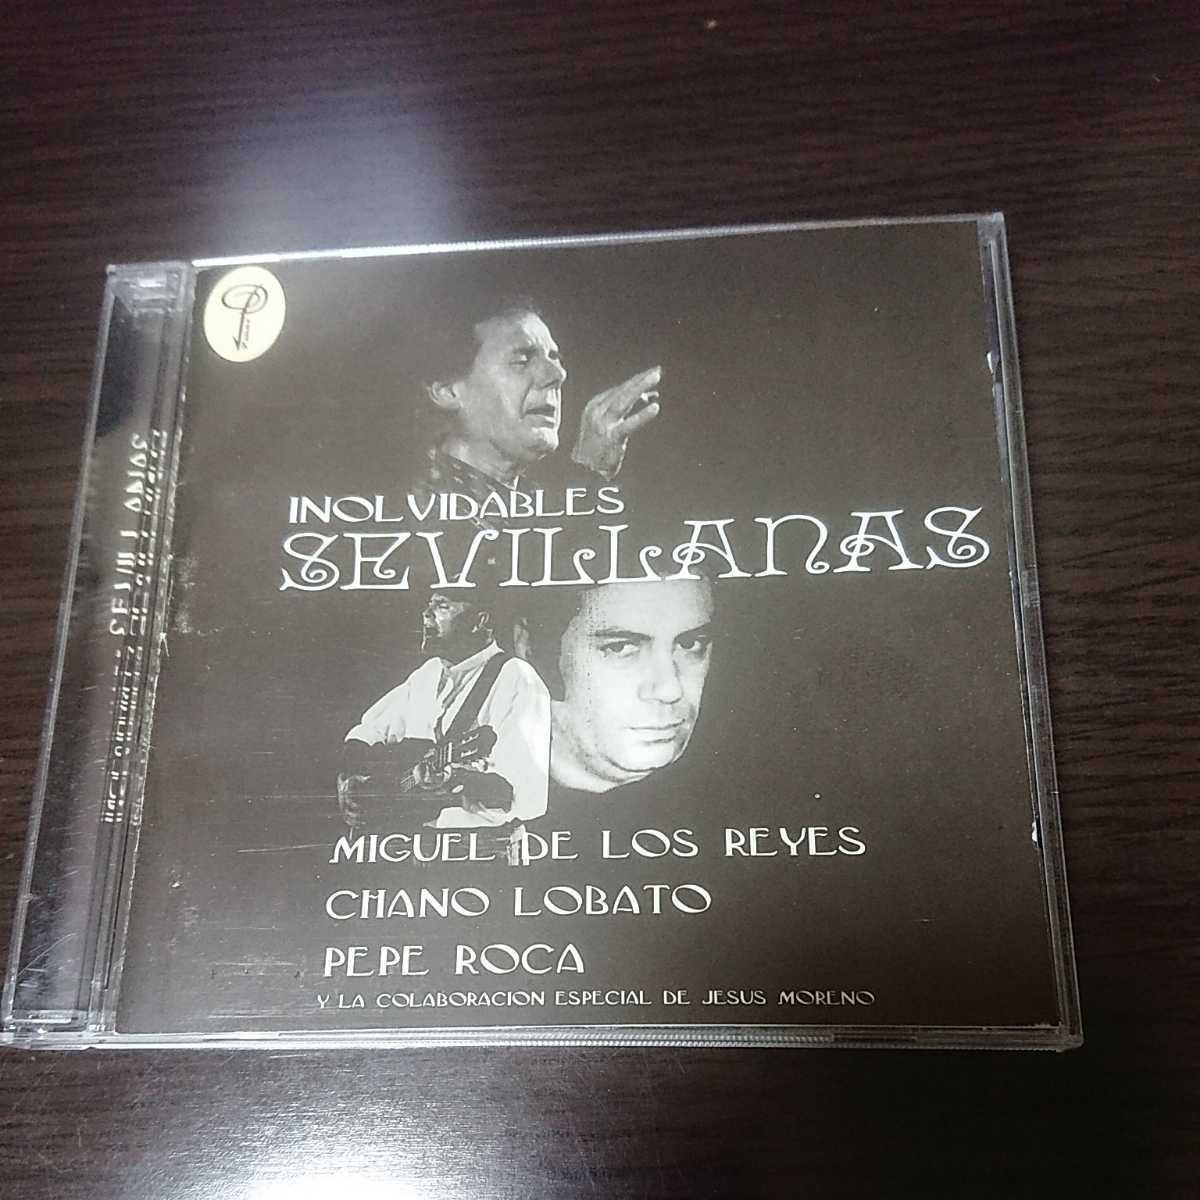 CD セビジャーナス INOLVIDABLES SEVILLANASの画像1